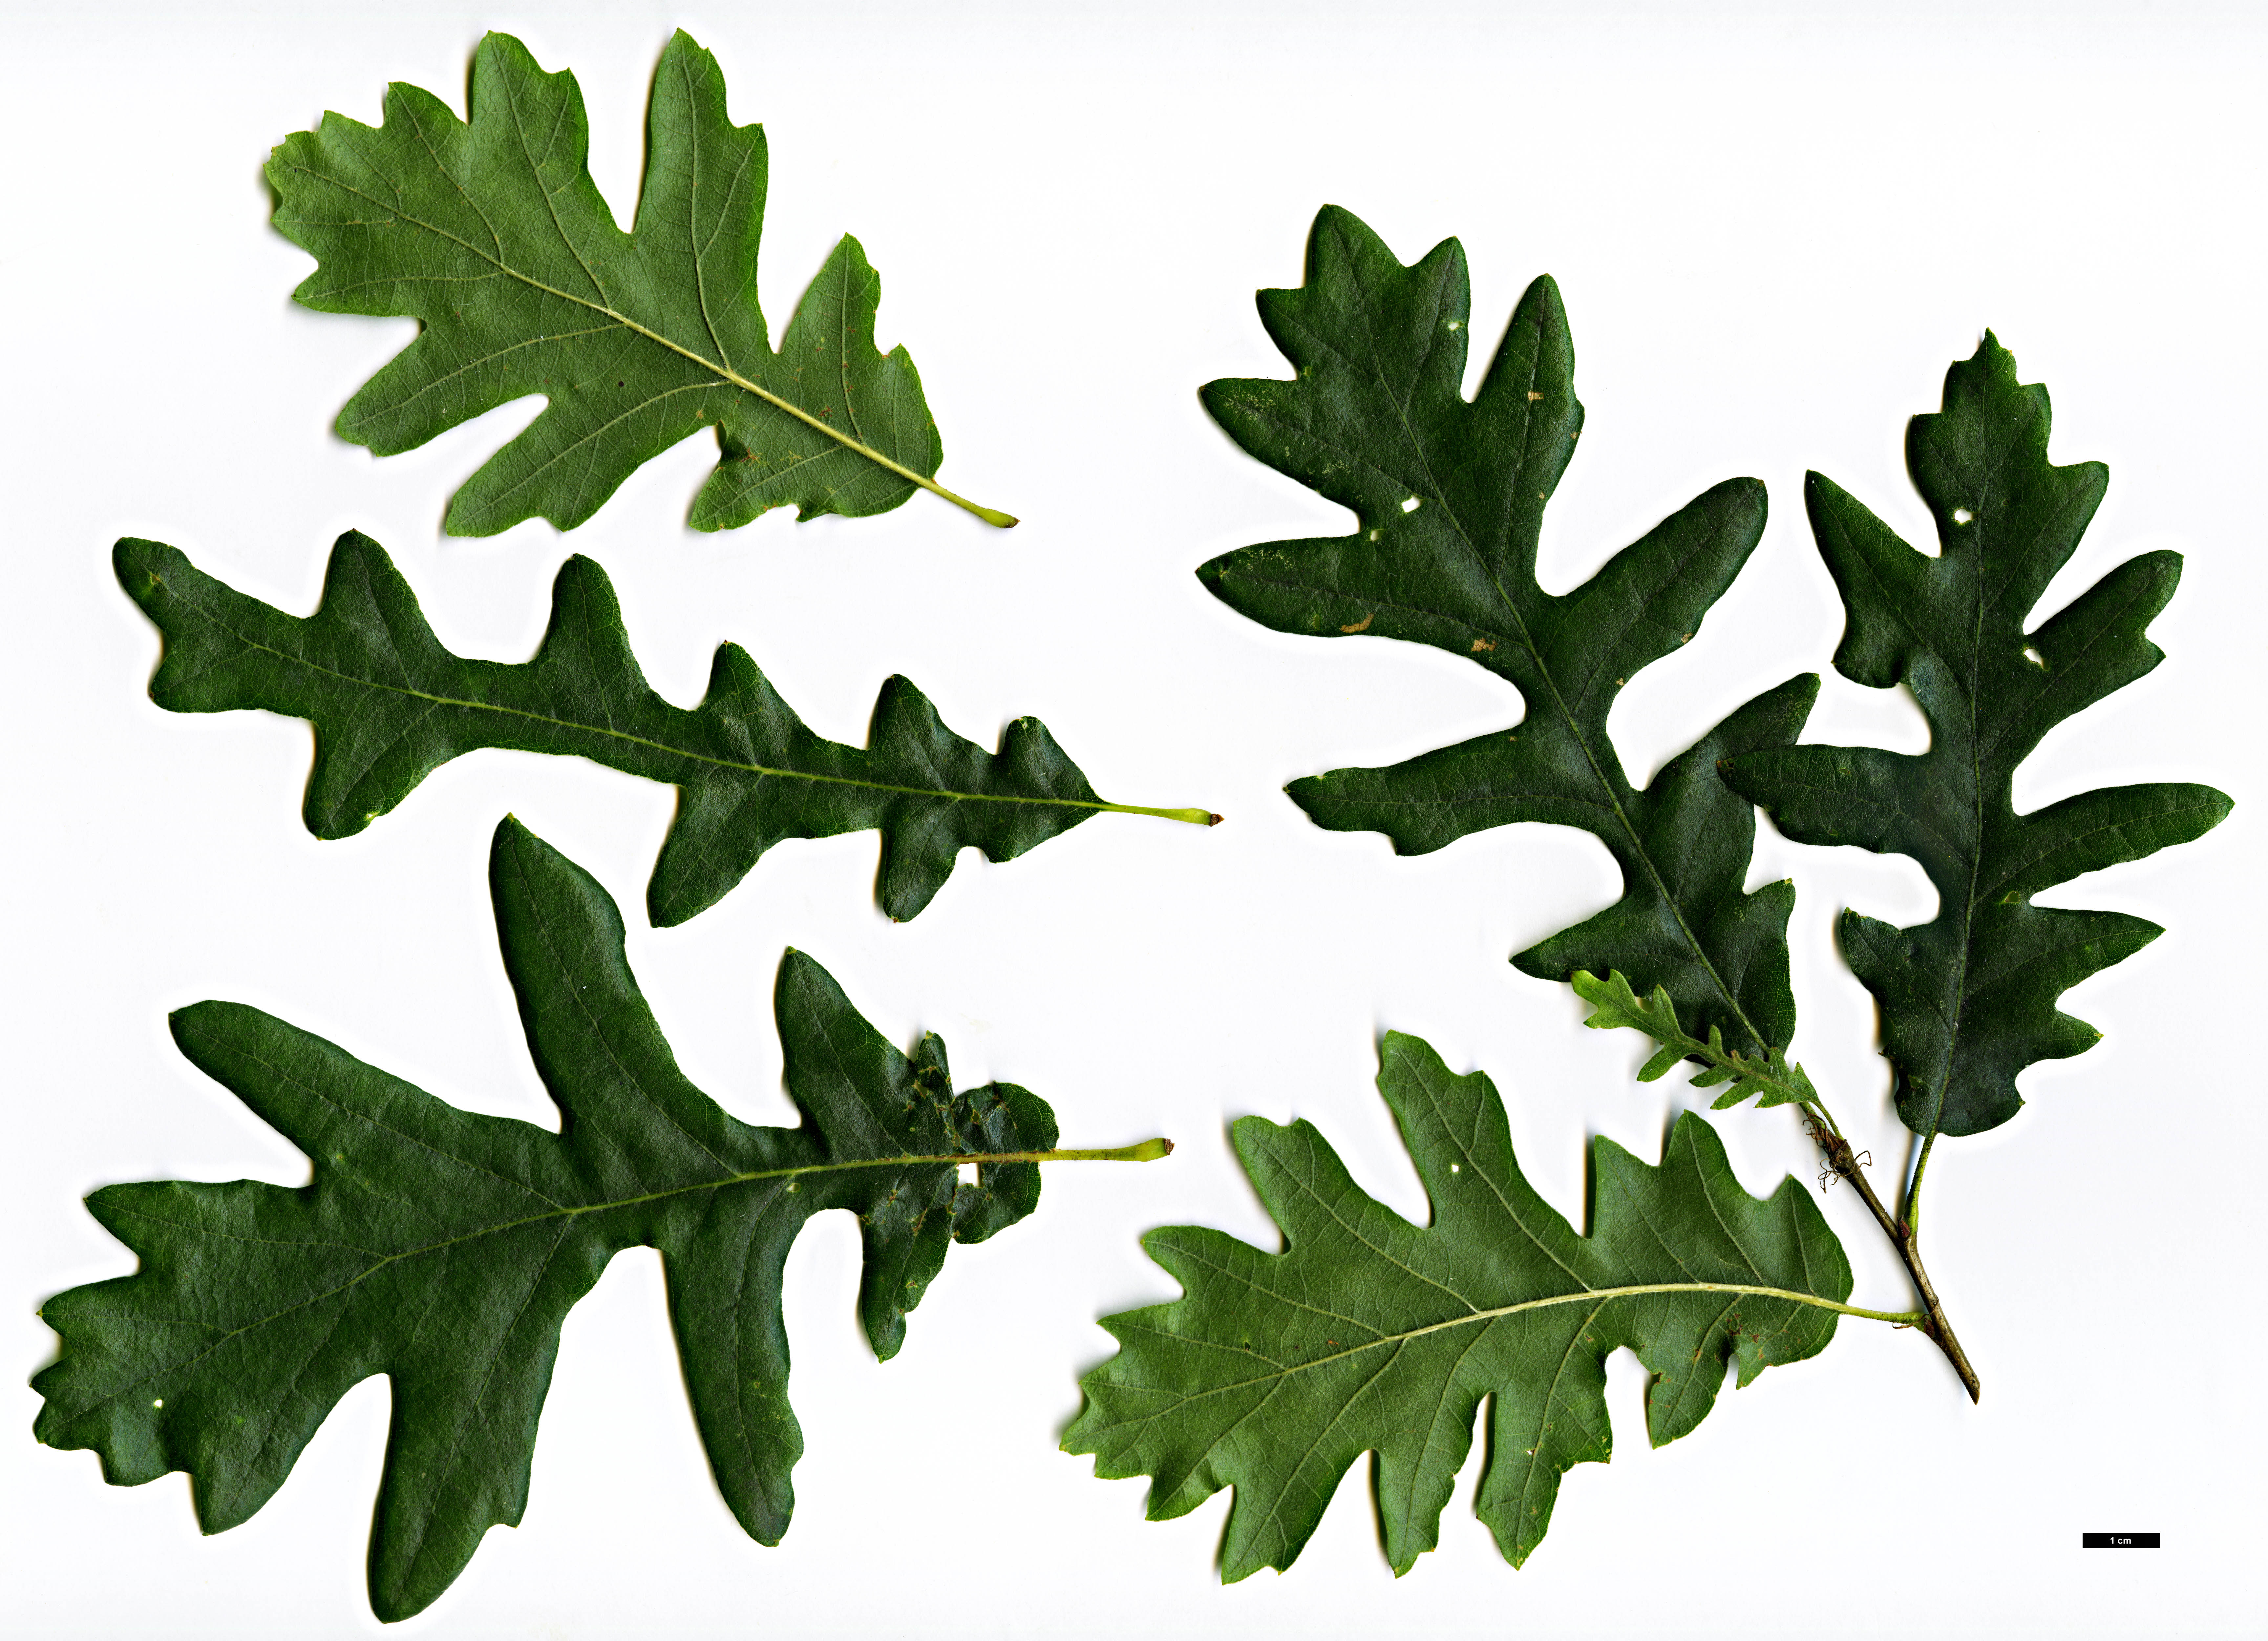 High resolution image: Family: Fagaceae - Genus: Quercus - Taxon: cerris